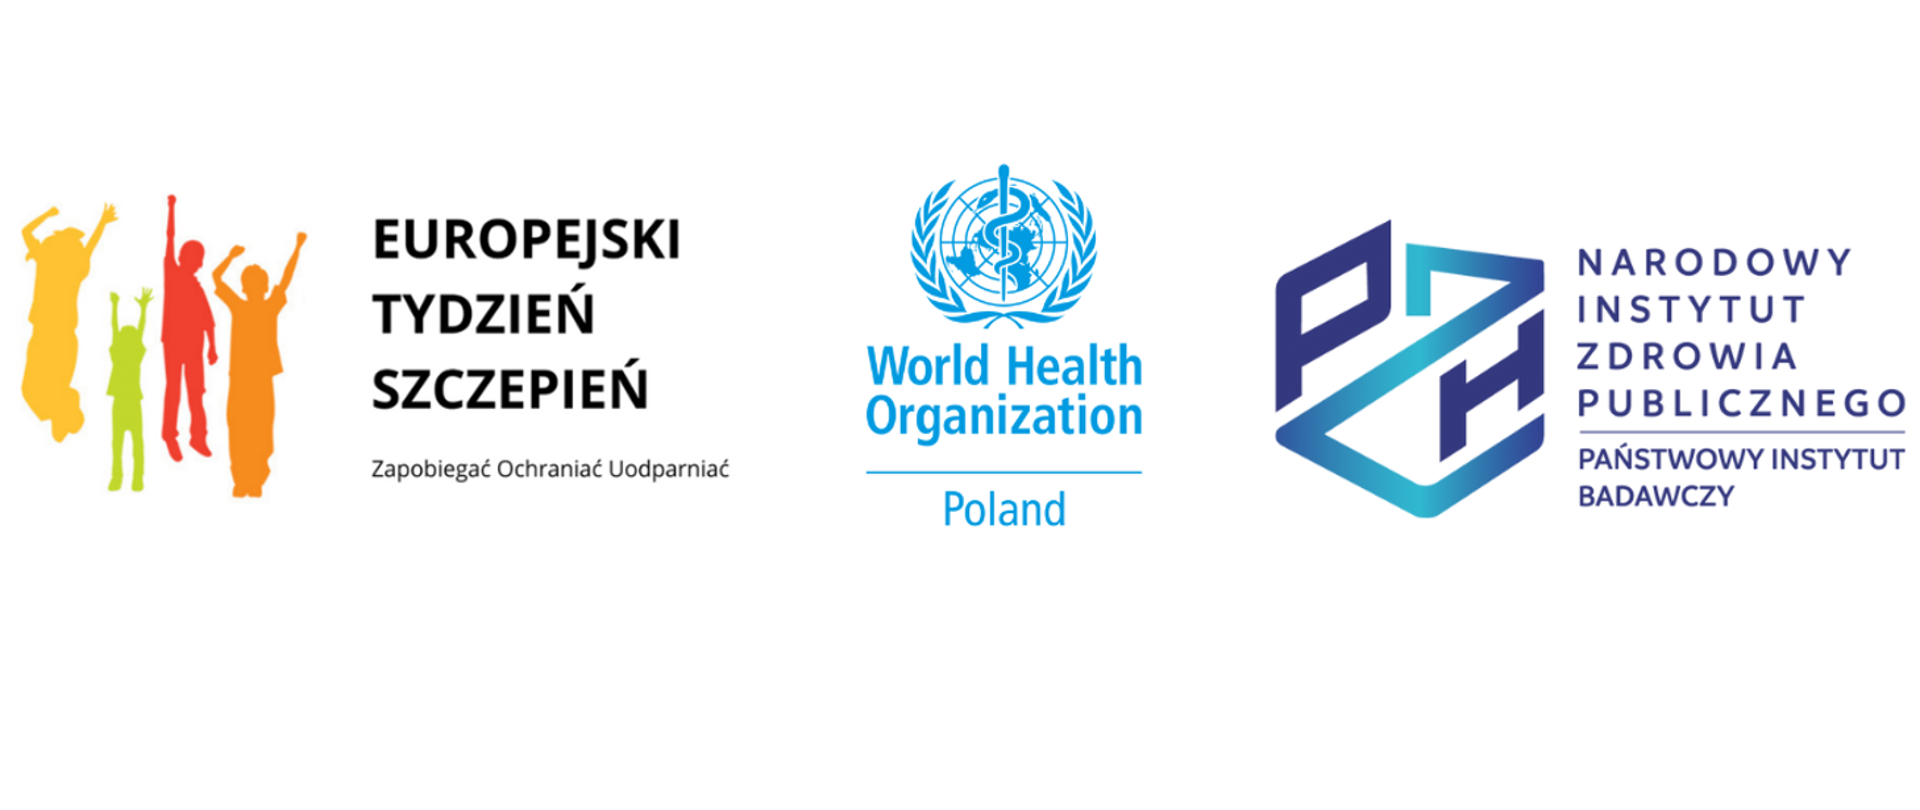 Europejski Tydzień Szczepień, World Health Organization Poland, Narodowy Instytut Zdrowia Publicznego